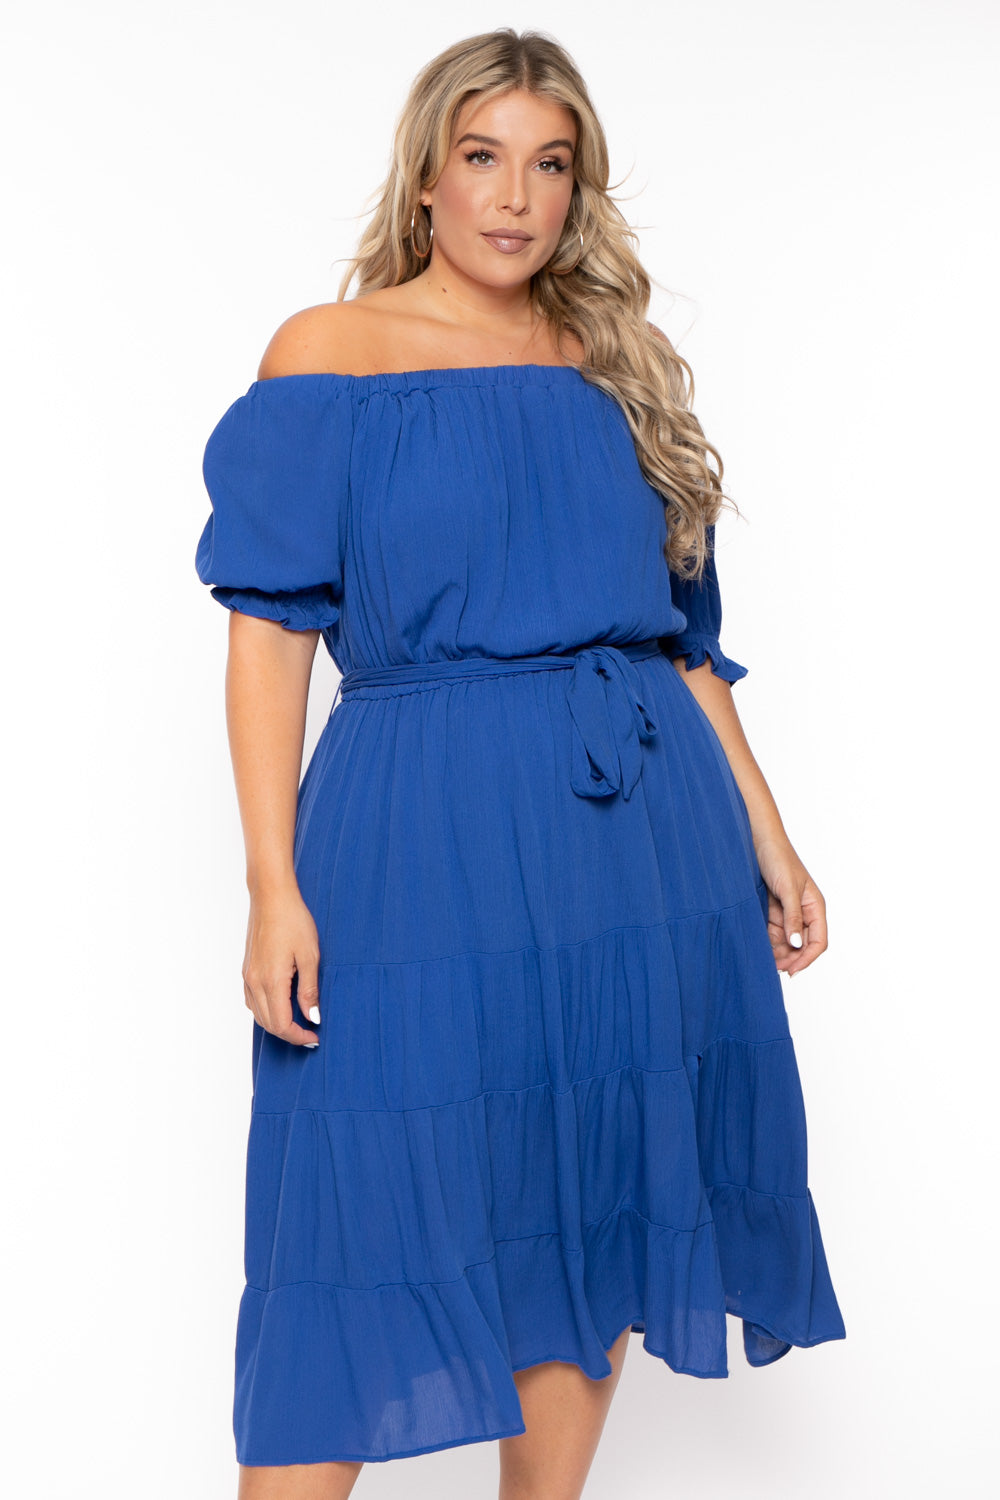 BY DESIGN Dresses Plus Size Daniela Off Shoulder Dress - Blue